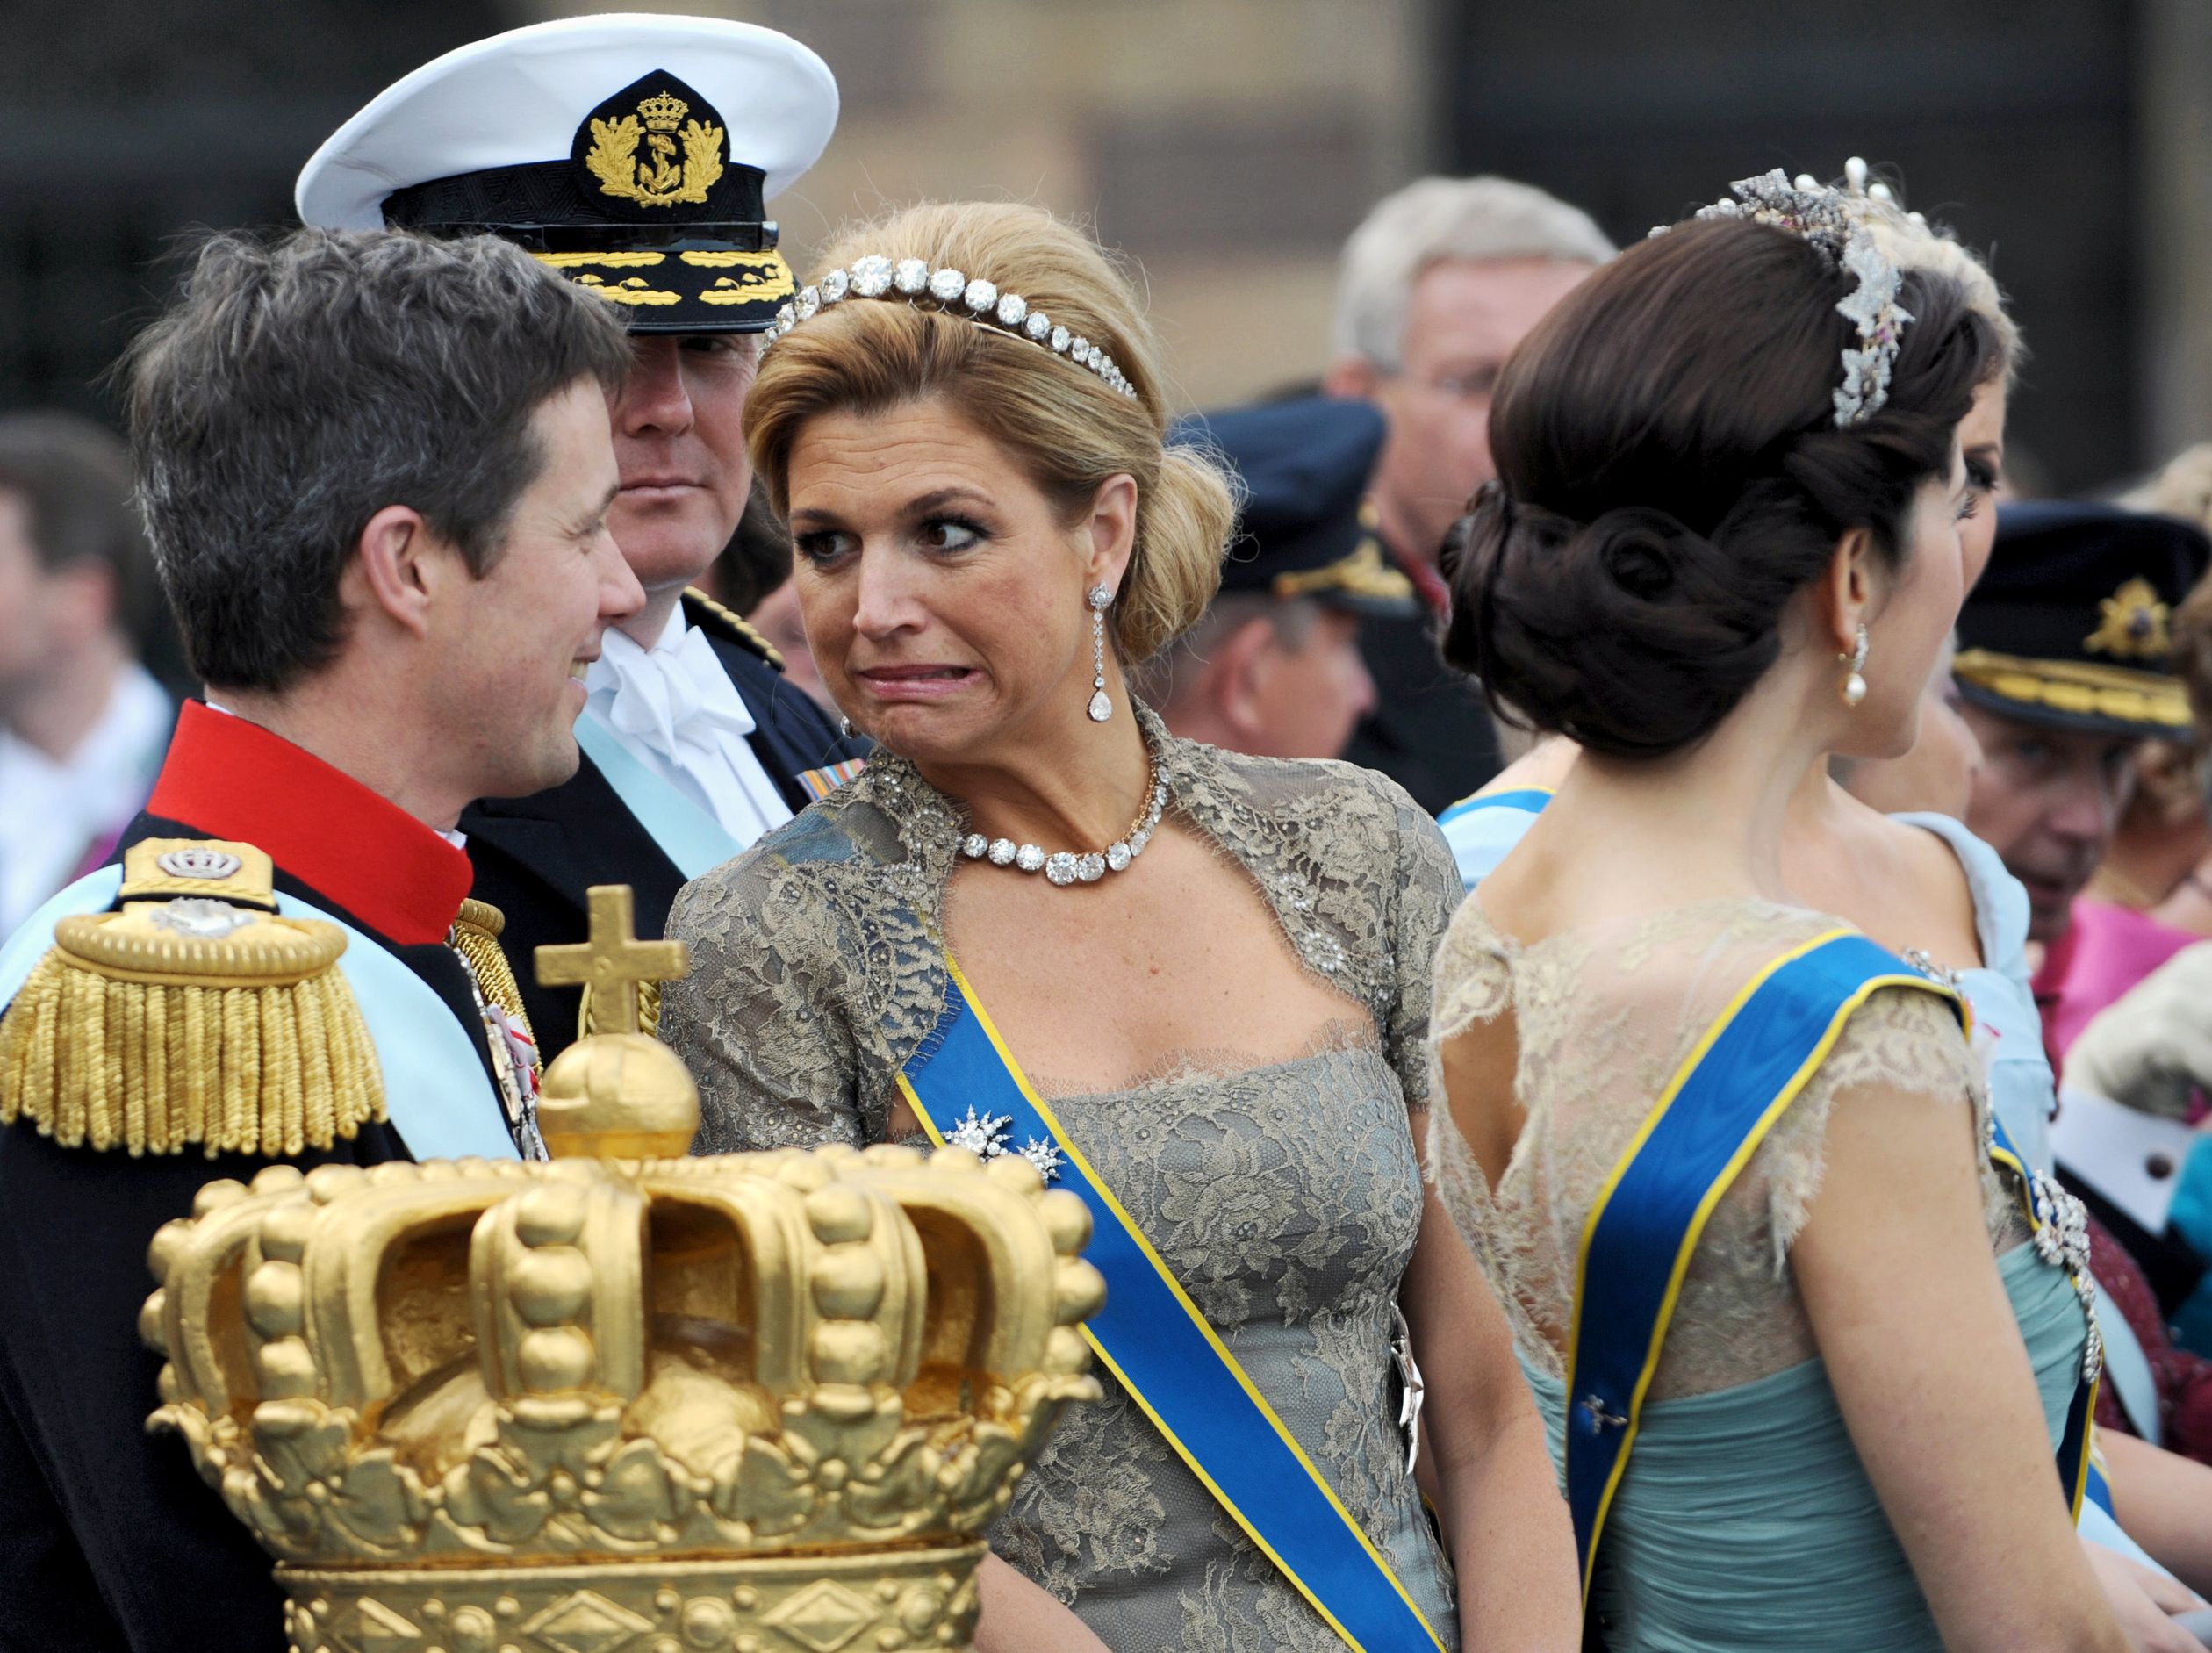 2010 - Huwelijk van kroonprinses Victoria van Zweden